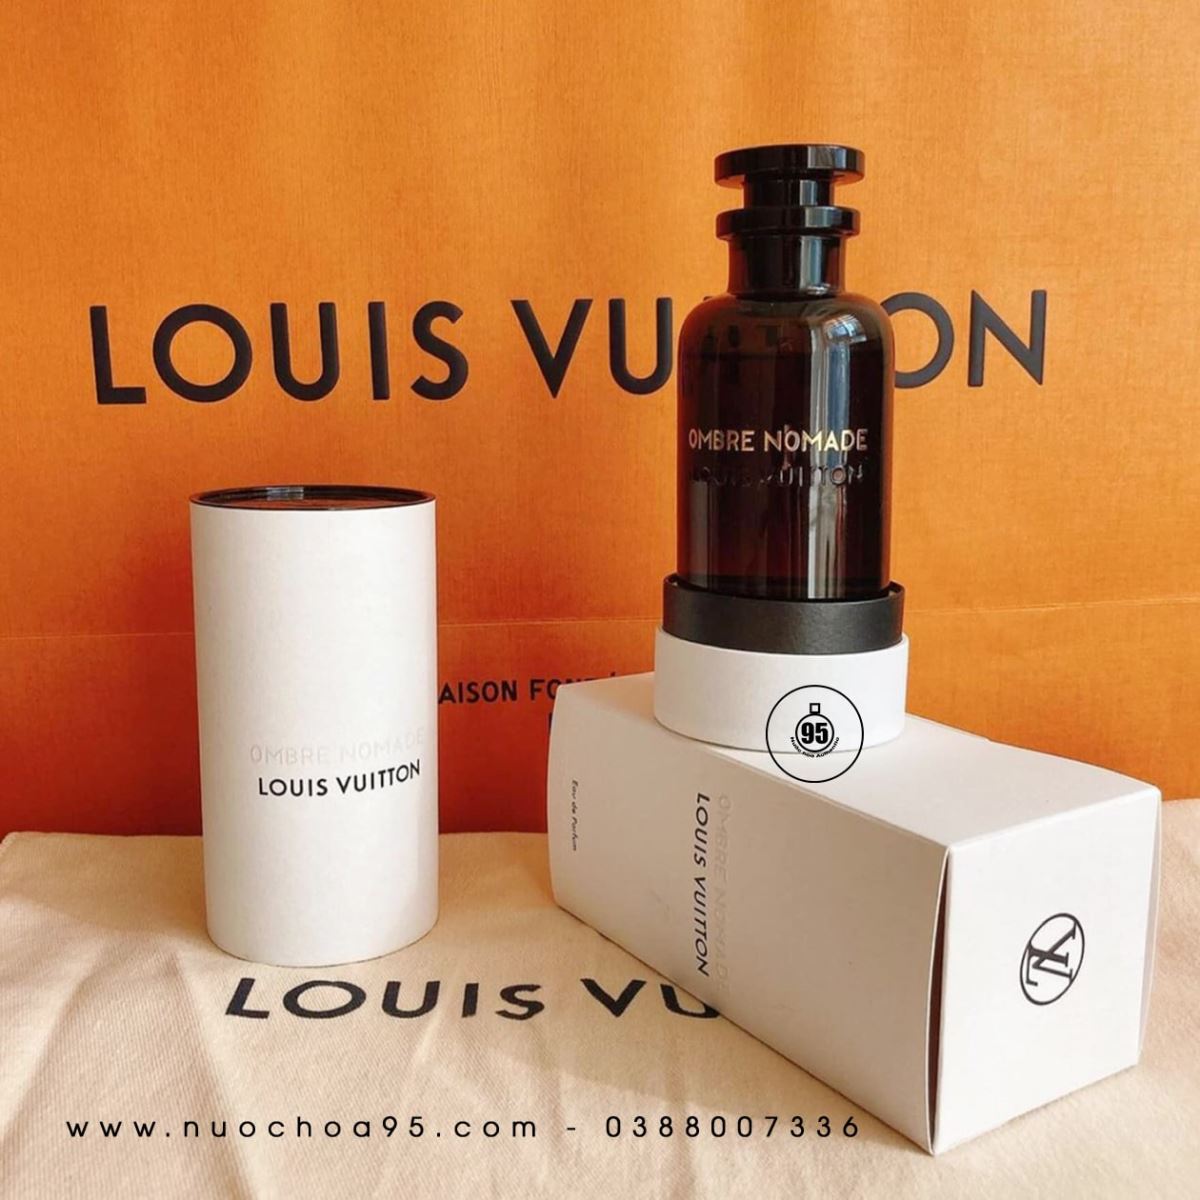 Nước hoa Louis Vuitton Ombre Nomade - Ảnh 2